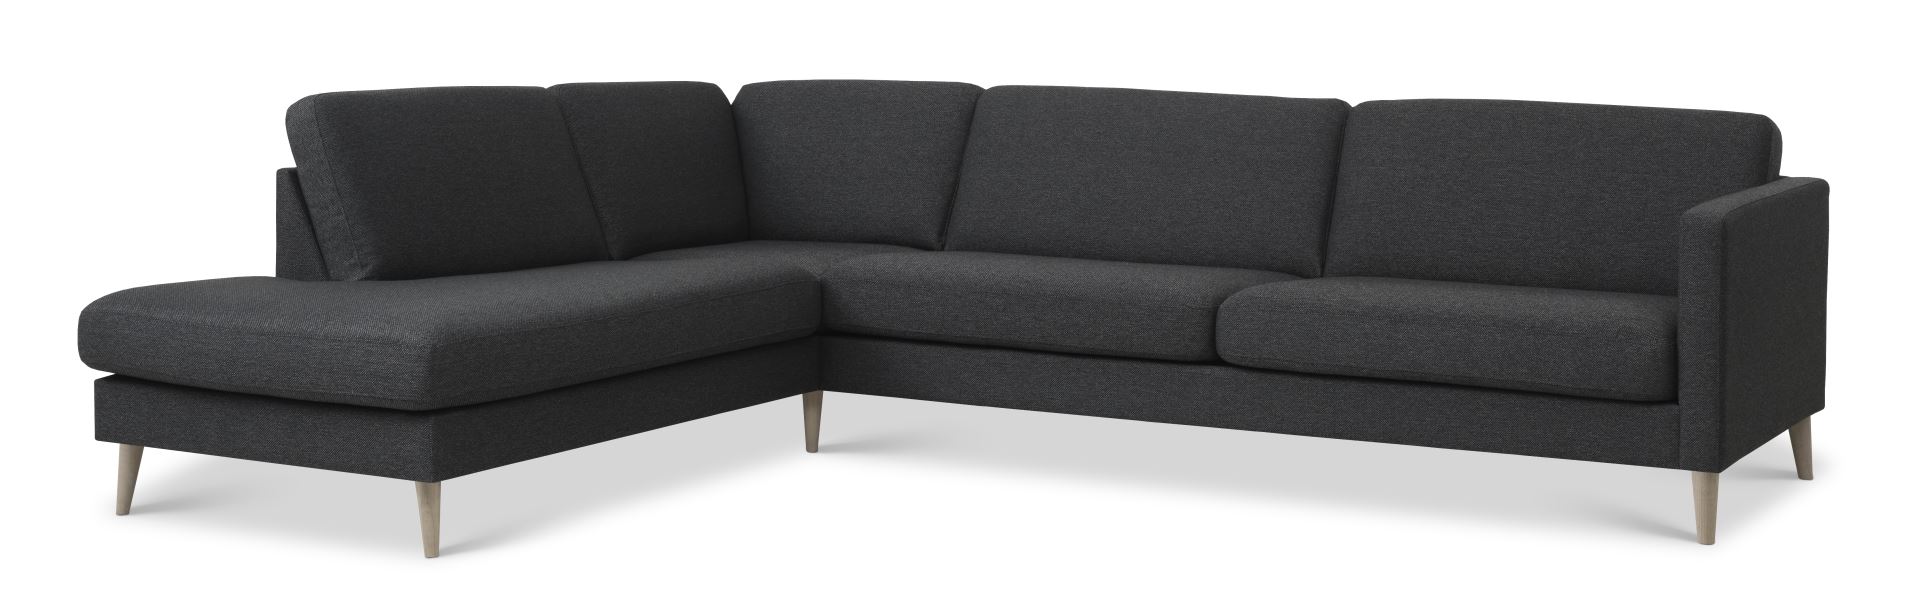 Ask sæt 60 stor OE sofa, m. venstre chaiselong - antracitgrå polyester stof og natur træ